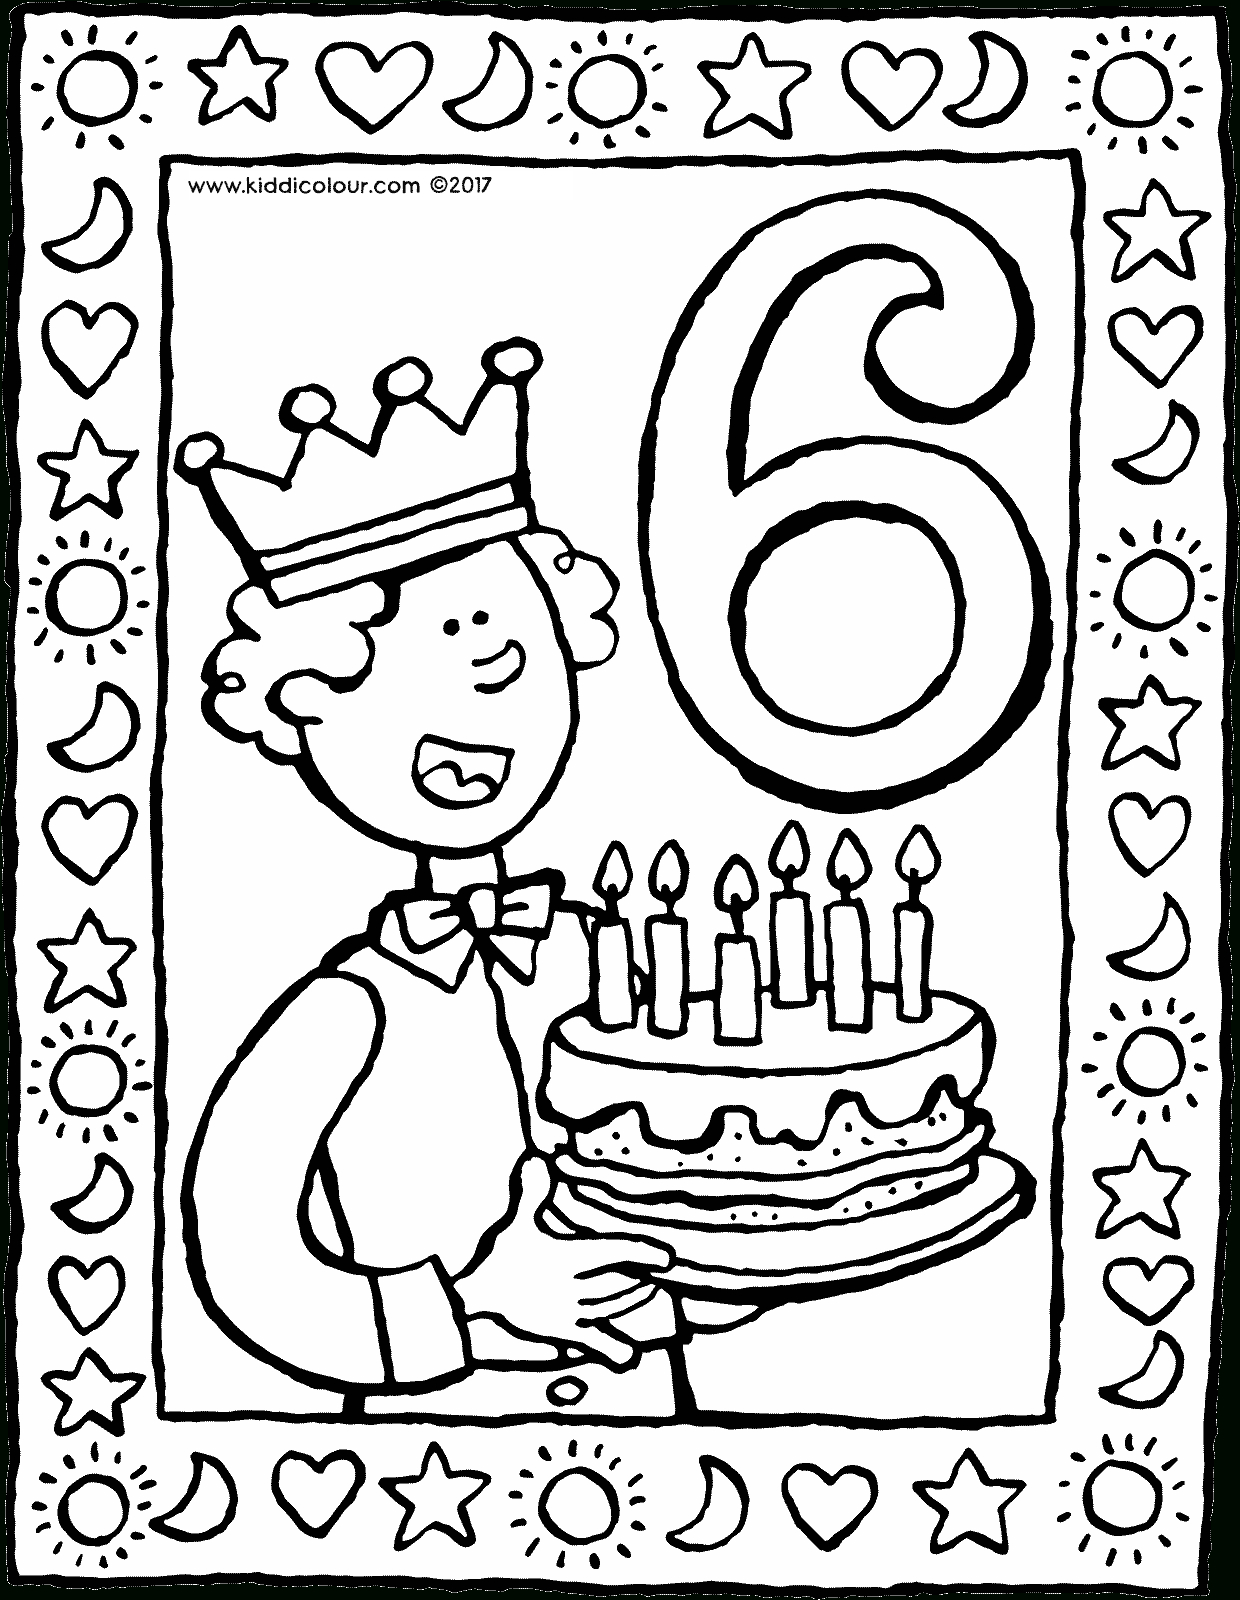 6. Geburtstag Mit Torte - Kiddimalseite verwandt mit Ausmalbild Torte